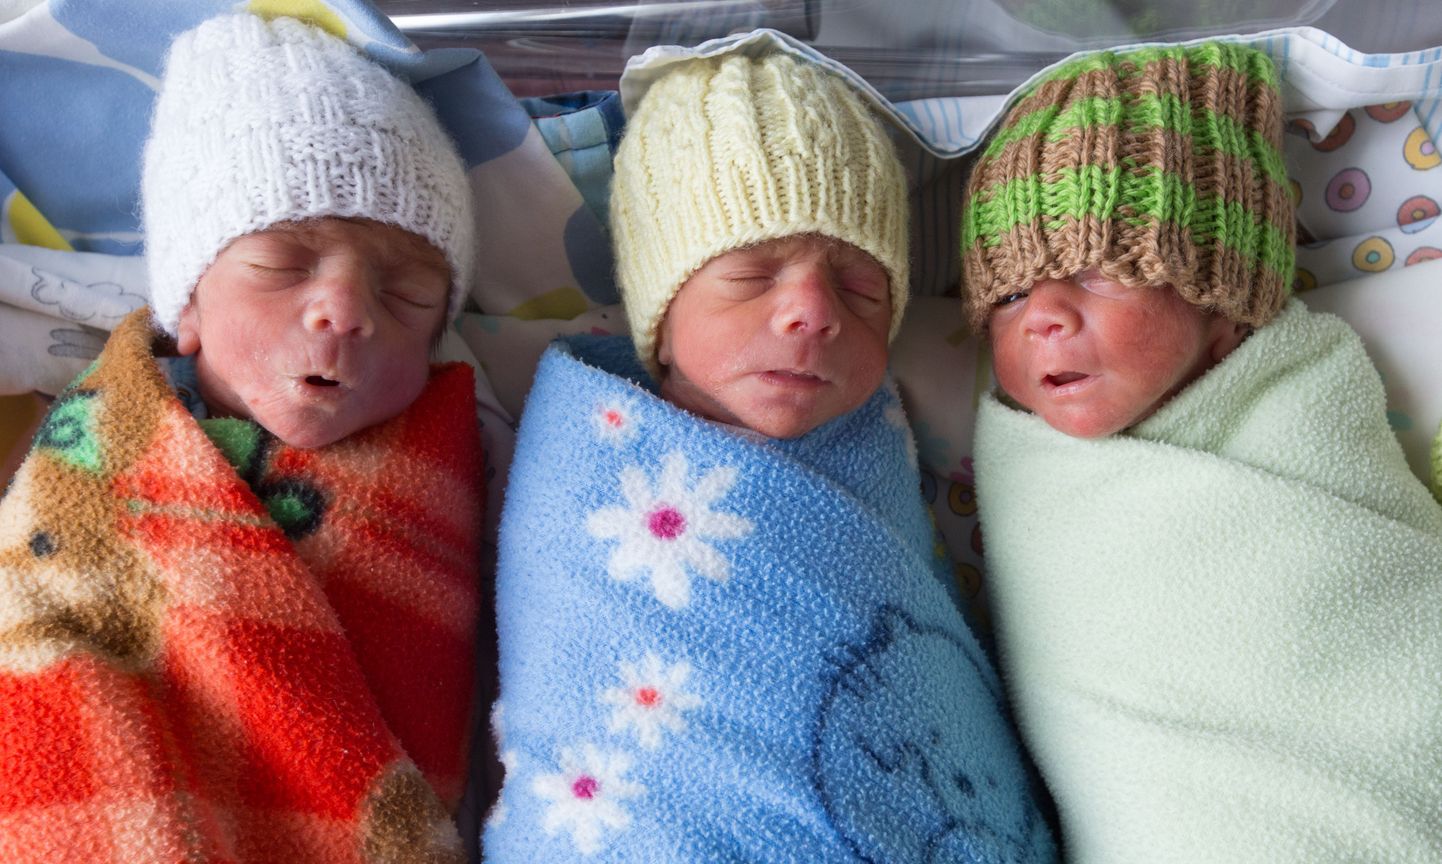 Eelmisel nädalal sündinud kolm poissi Ricardo (vasakult), Michael ja Gabriel tõsteti eile esimest korda emaga kokku ühte intensiivravi perepalatisse.